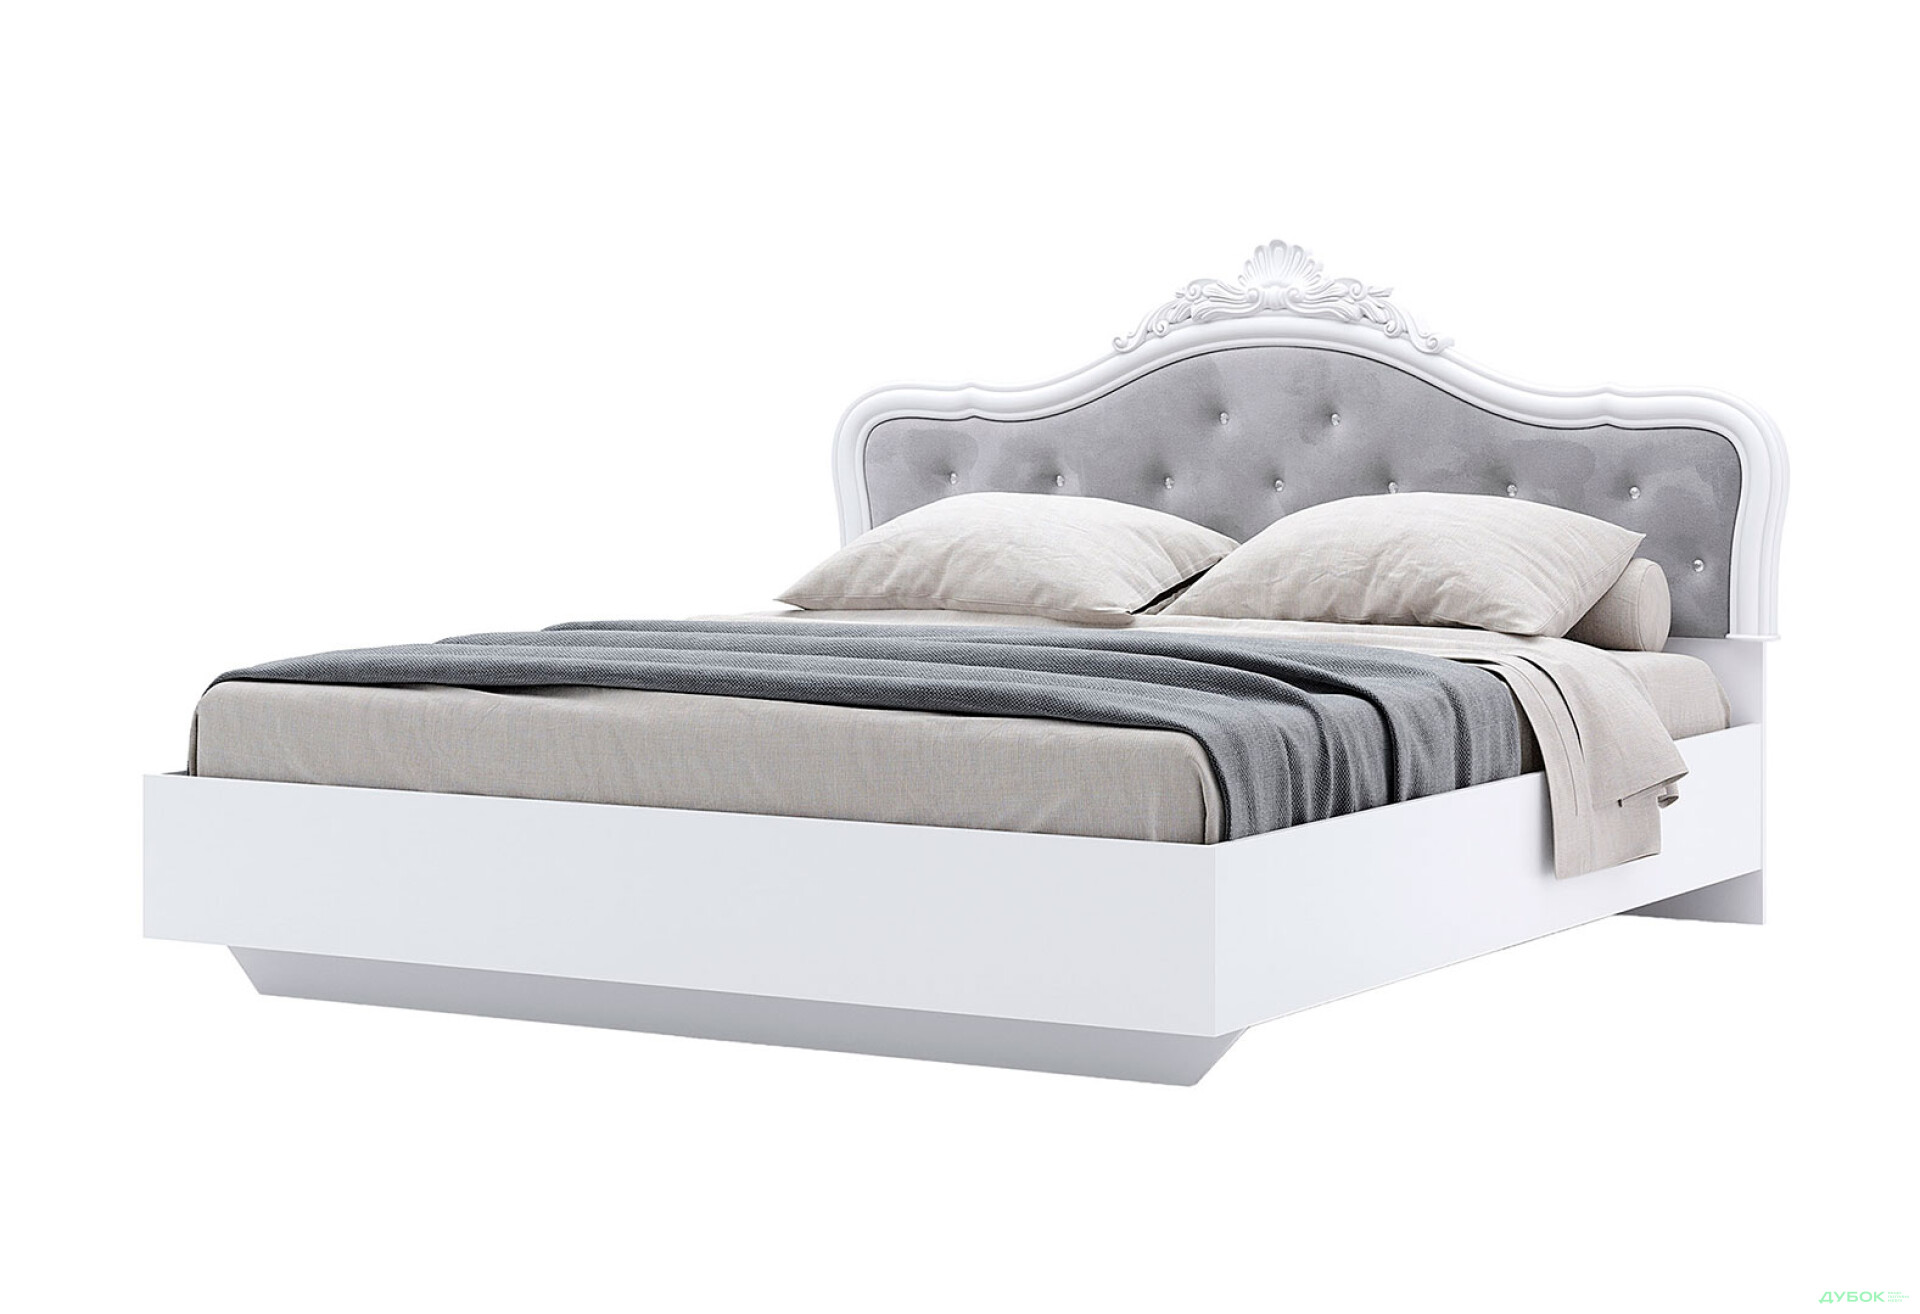 Фото 1 - Кровать MiroMark Луиза (без вклада) 160х200 см с короной, белая